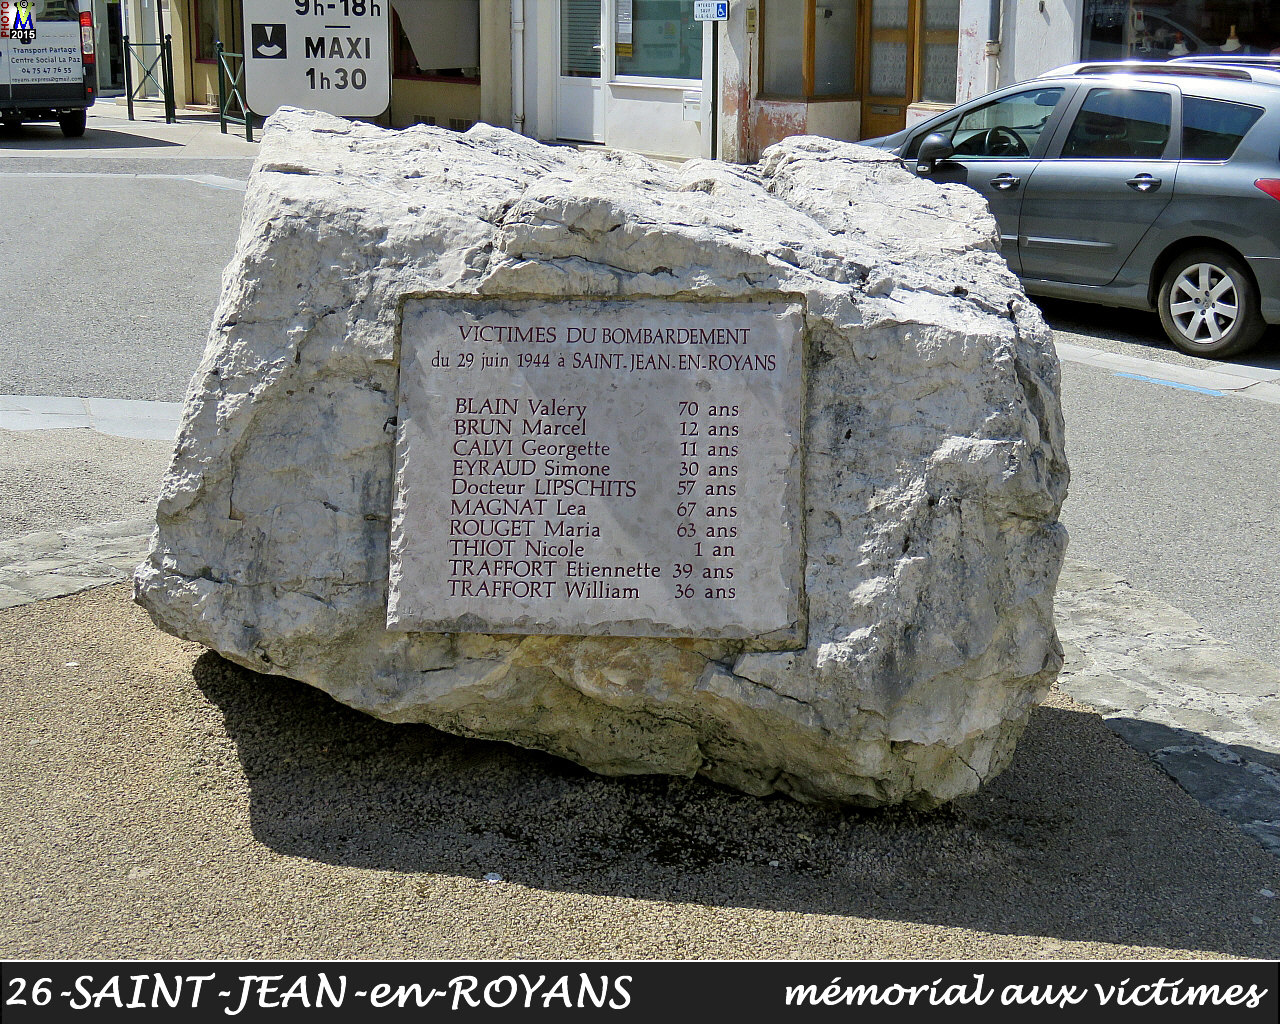 26StJEAN-ROYANS_memorial_100.jpg